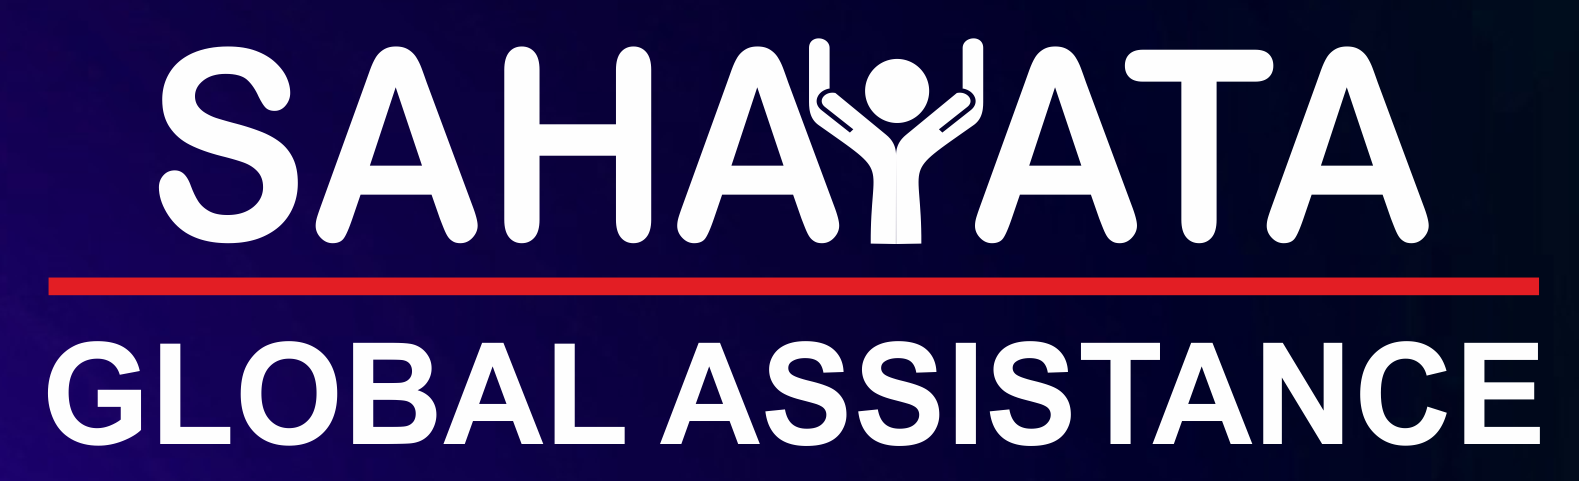 Sahayata Global Assistance P. Ltd.